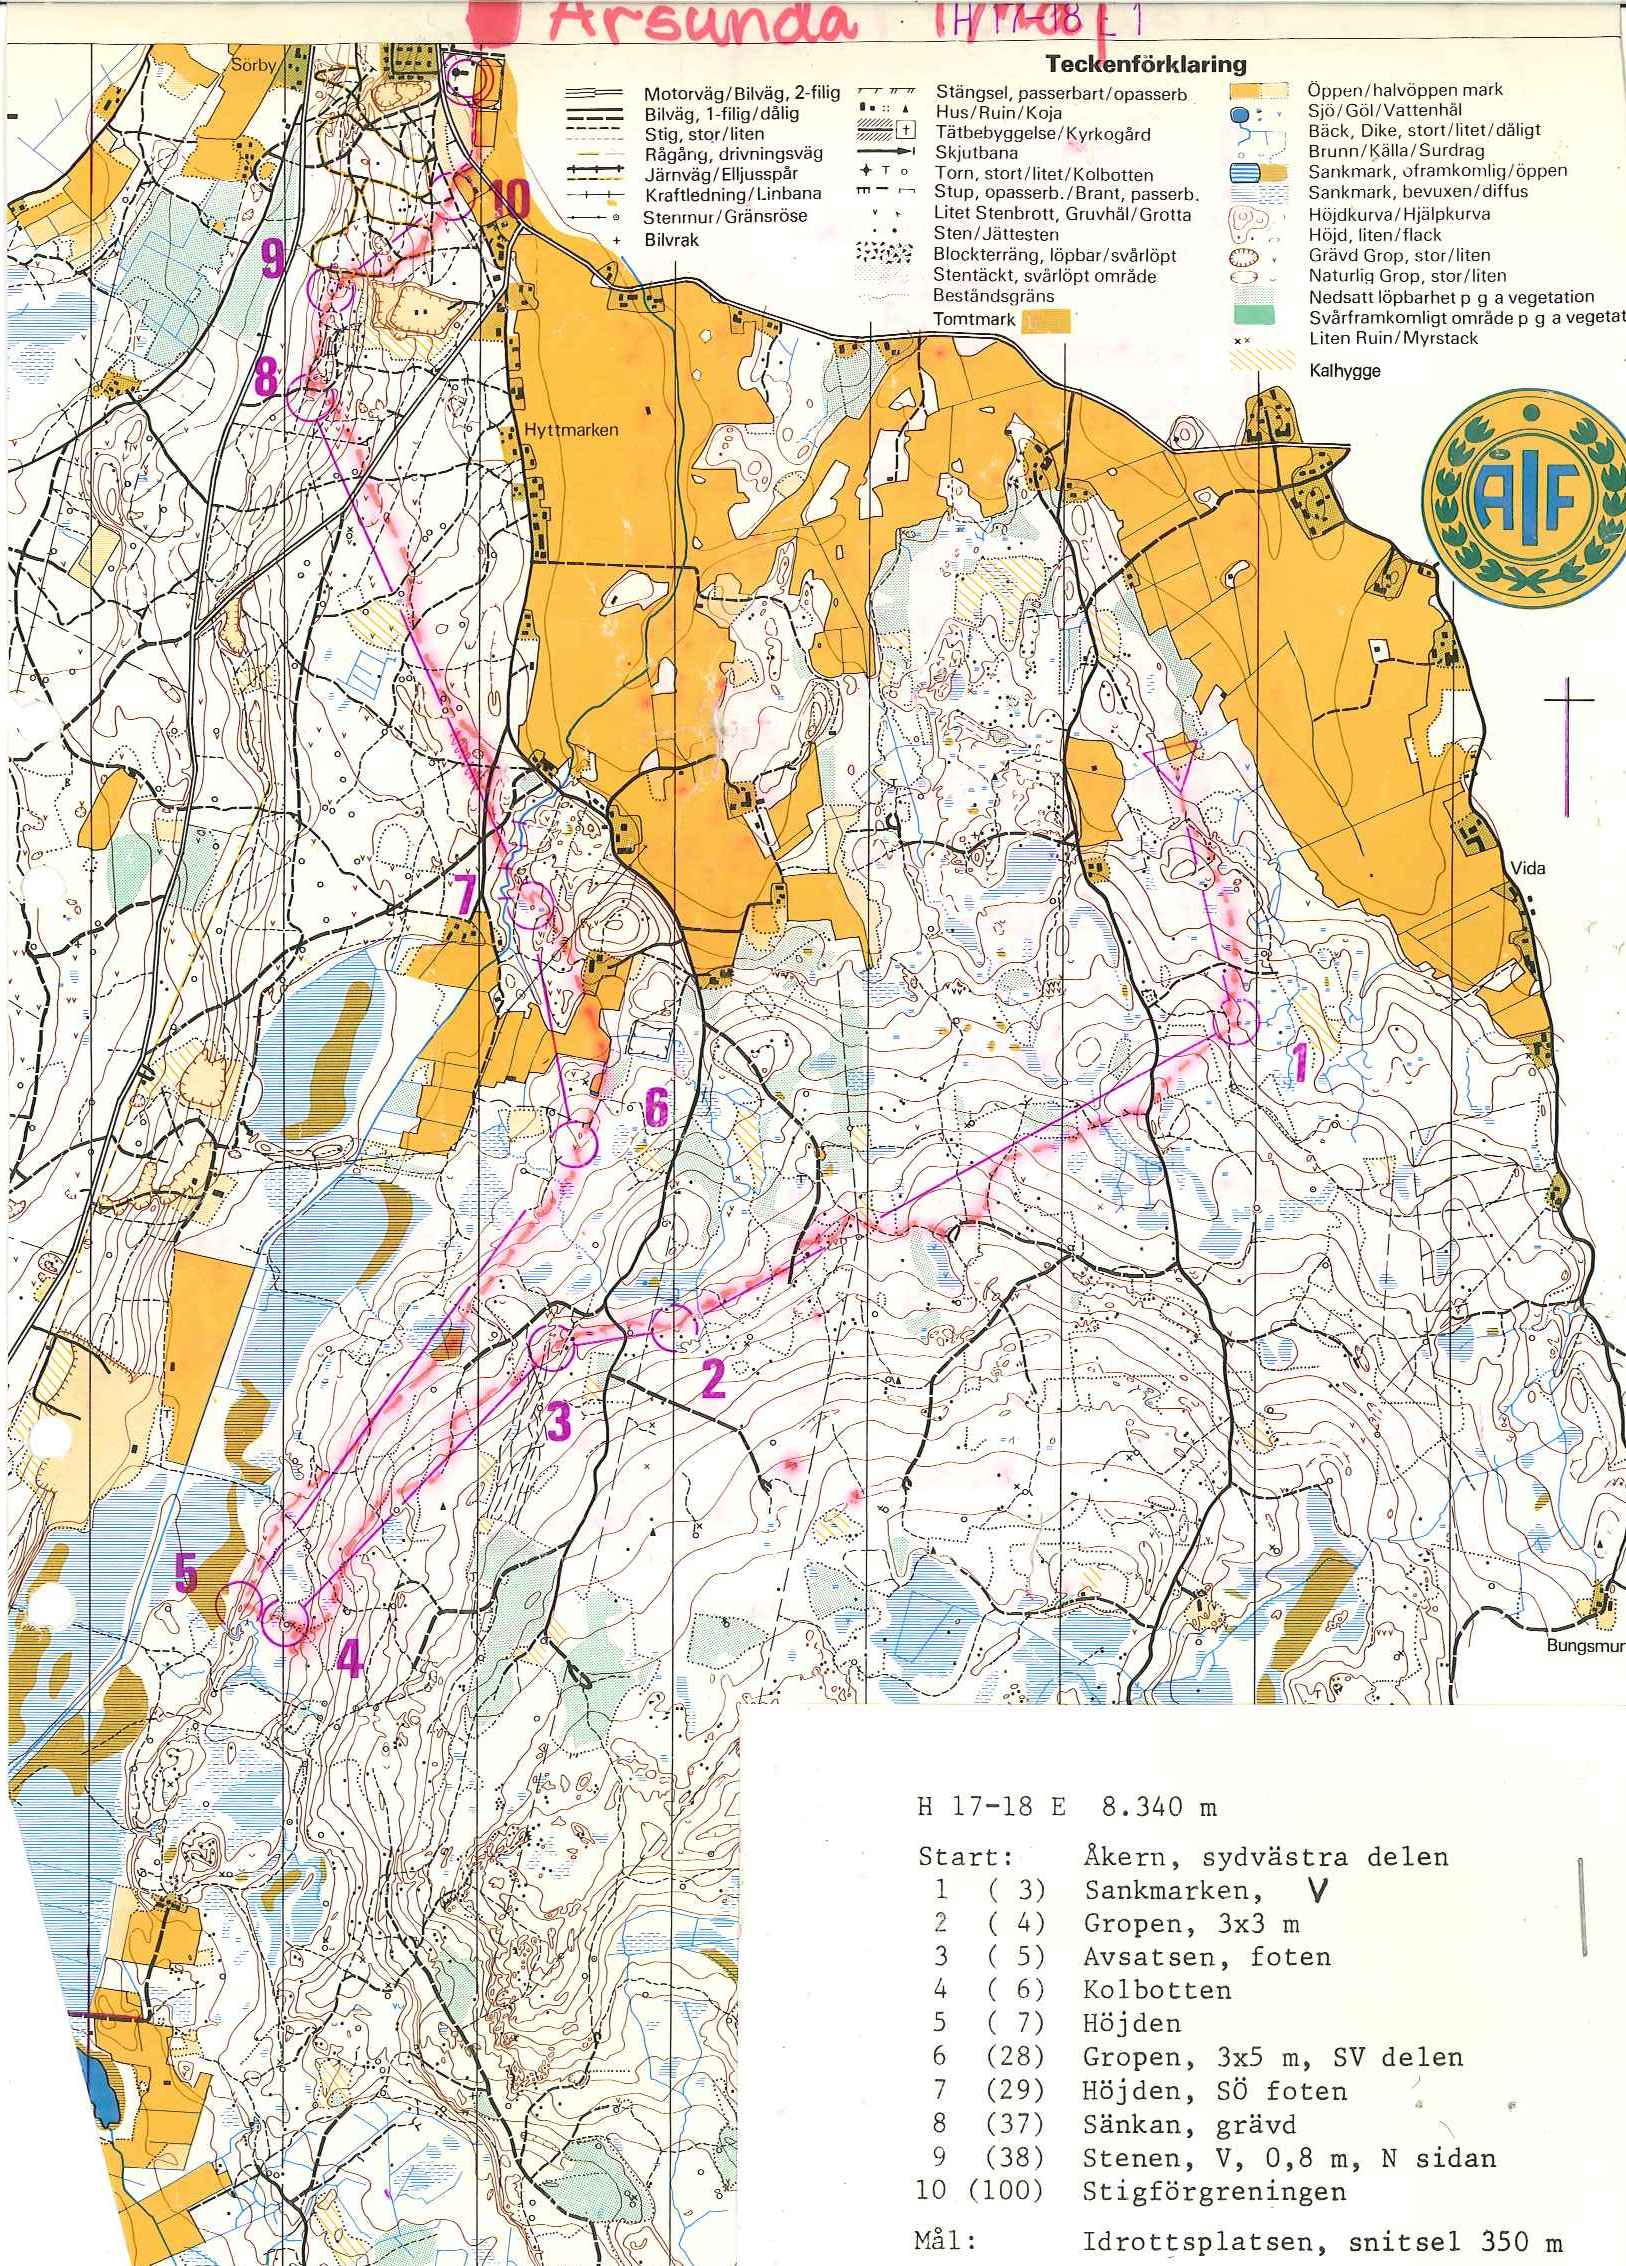 Årsunda (01.05.1978)